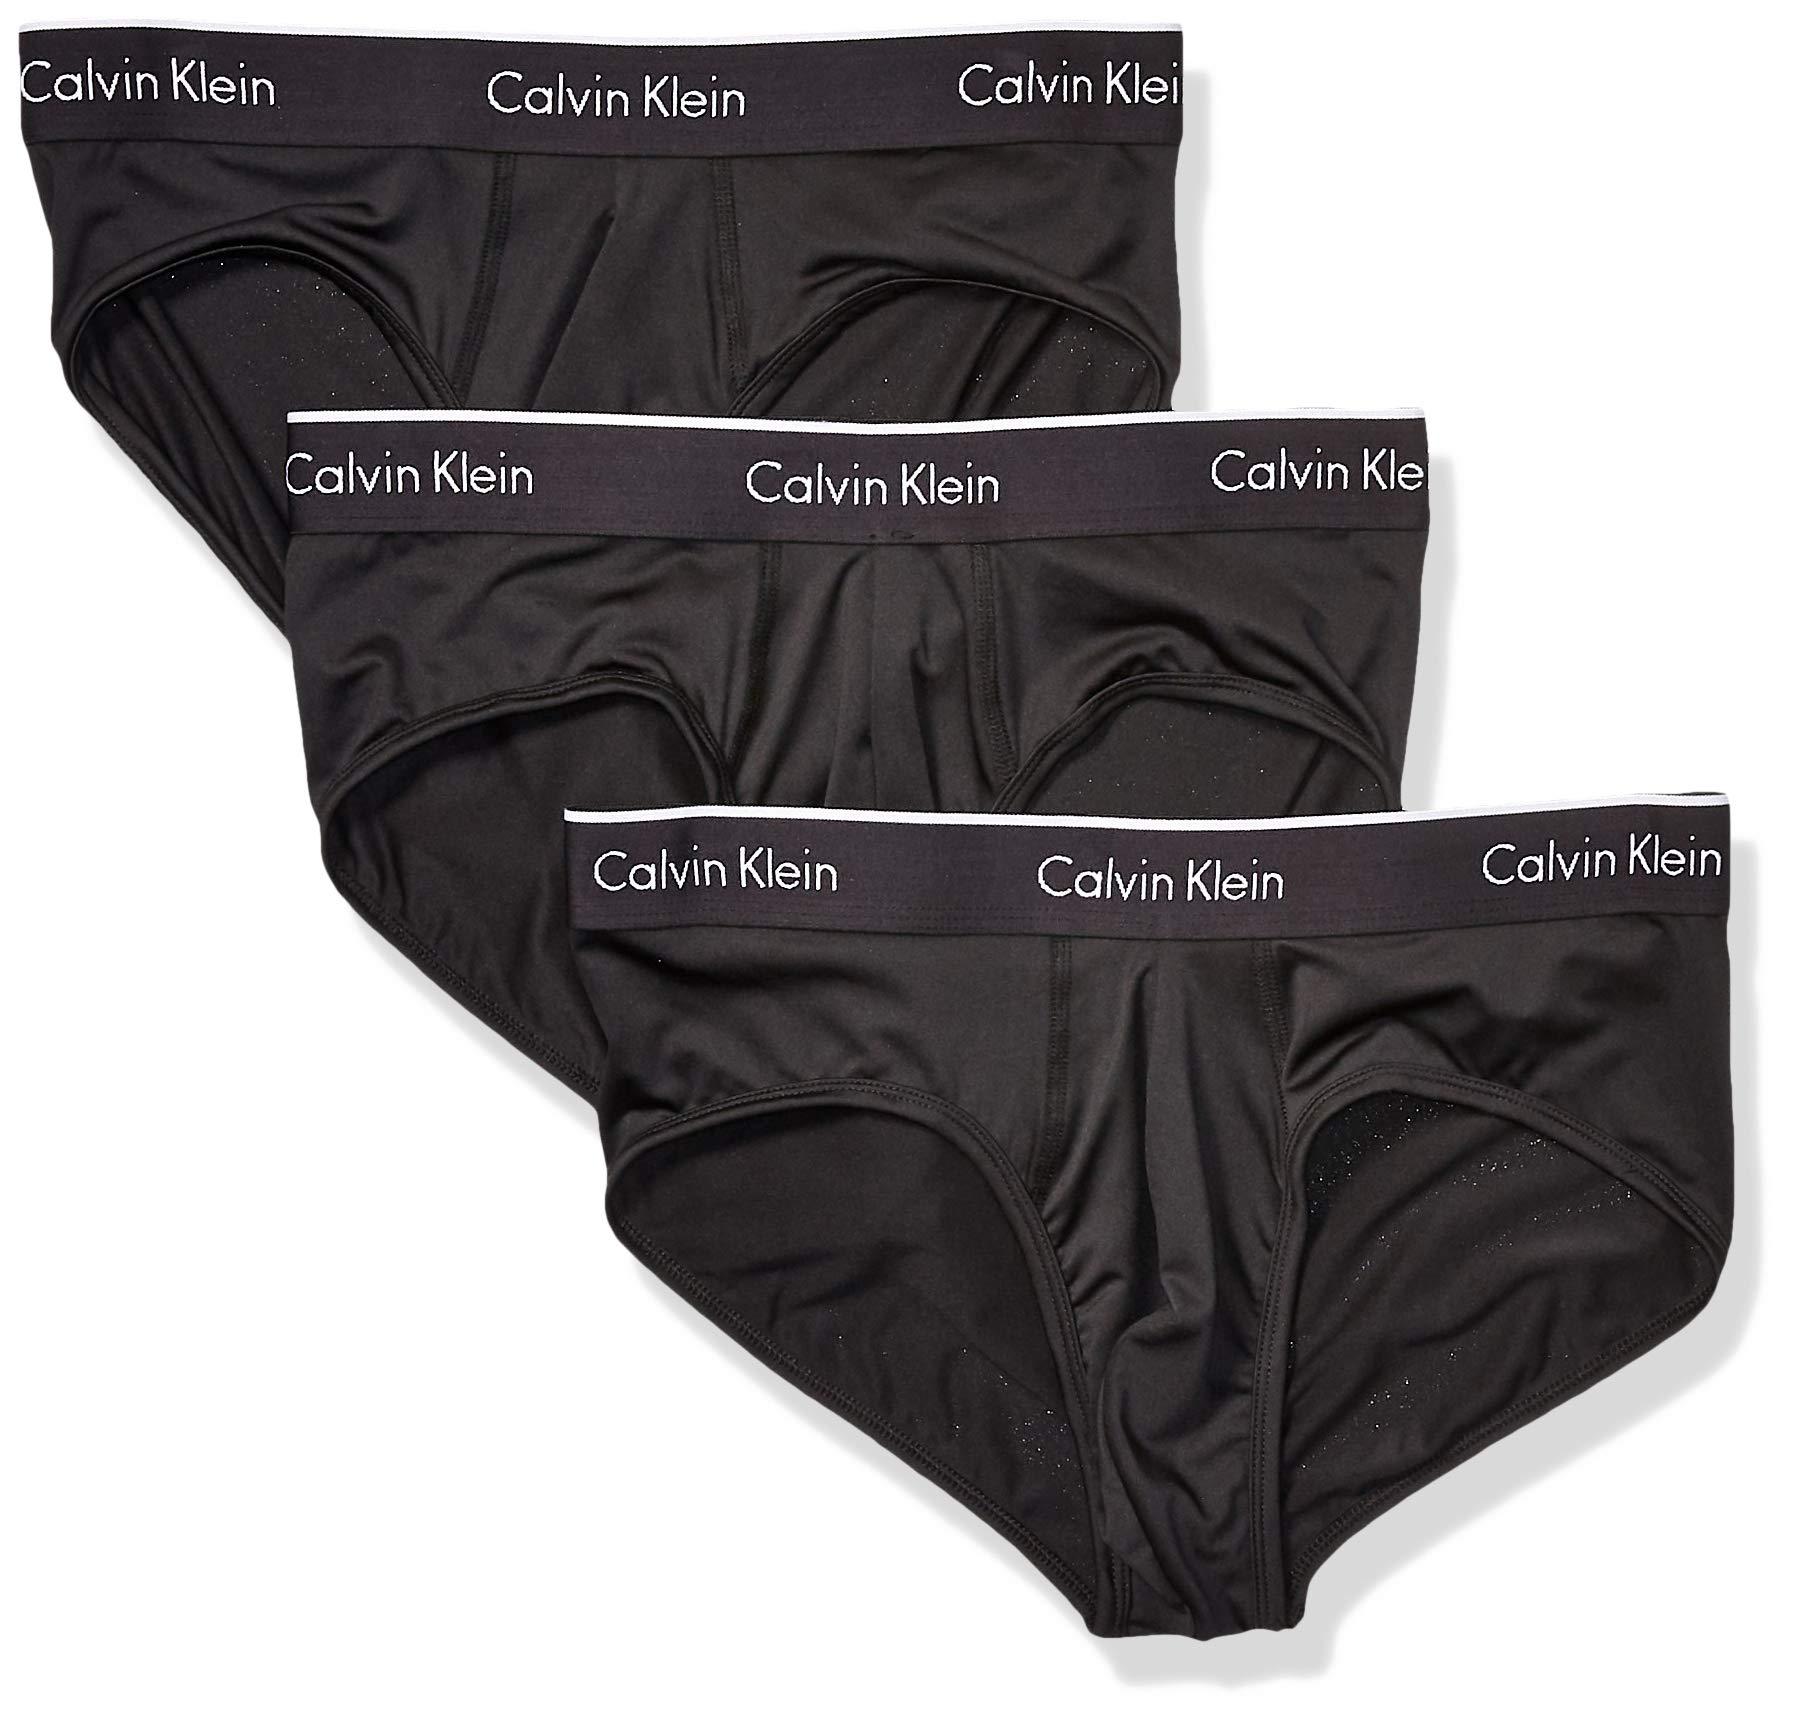 Calvin Klein Microfiber Stretch Multipack Briefs in Black/Black/Black ...